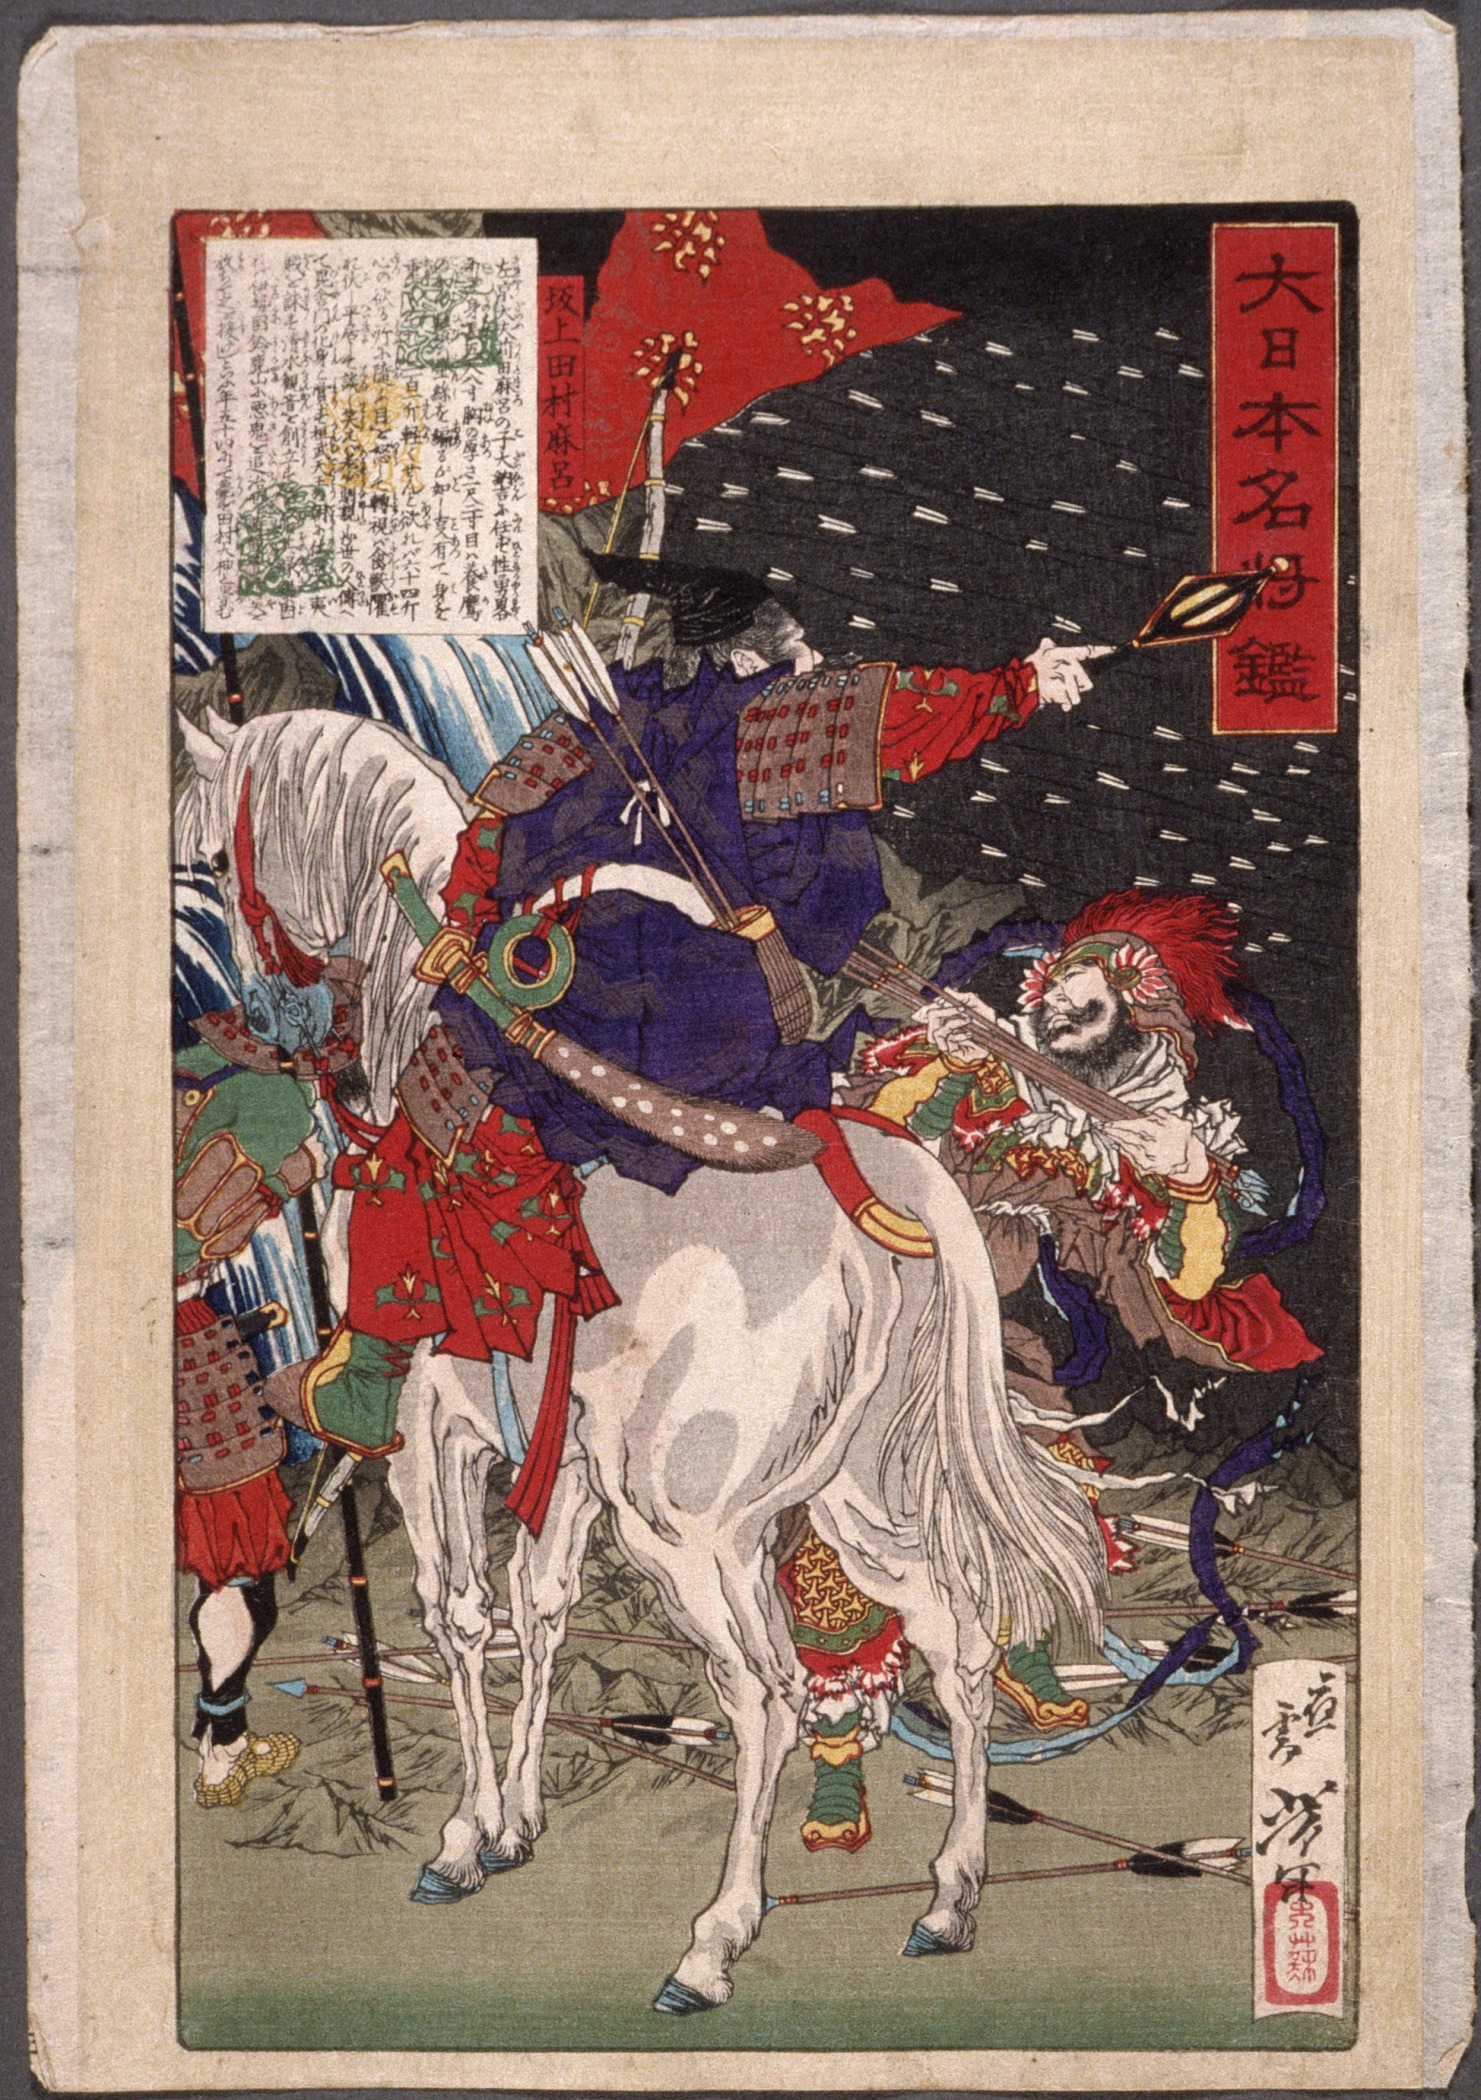 箭雨中的坂上田村麻呂 by Tsukioka Yoshitoshi - 1876 年 - 32 x 20.6 釐米 